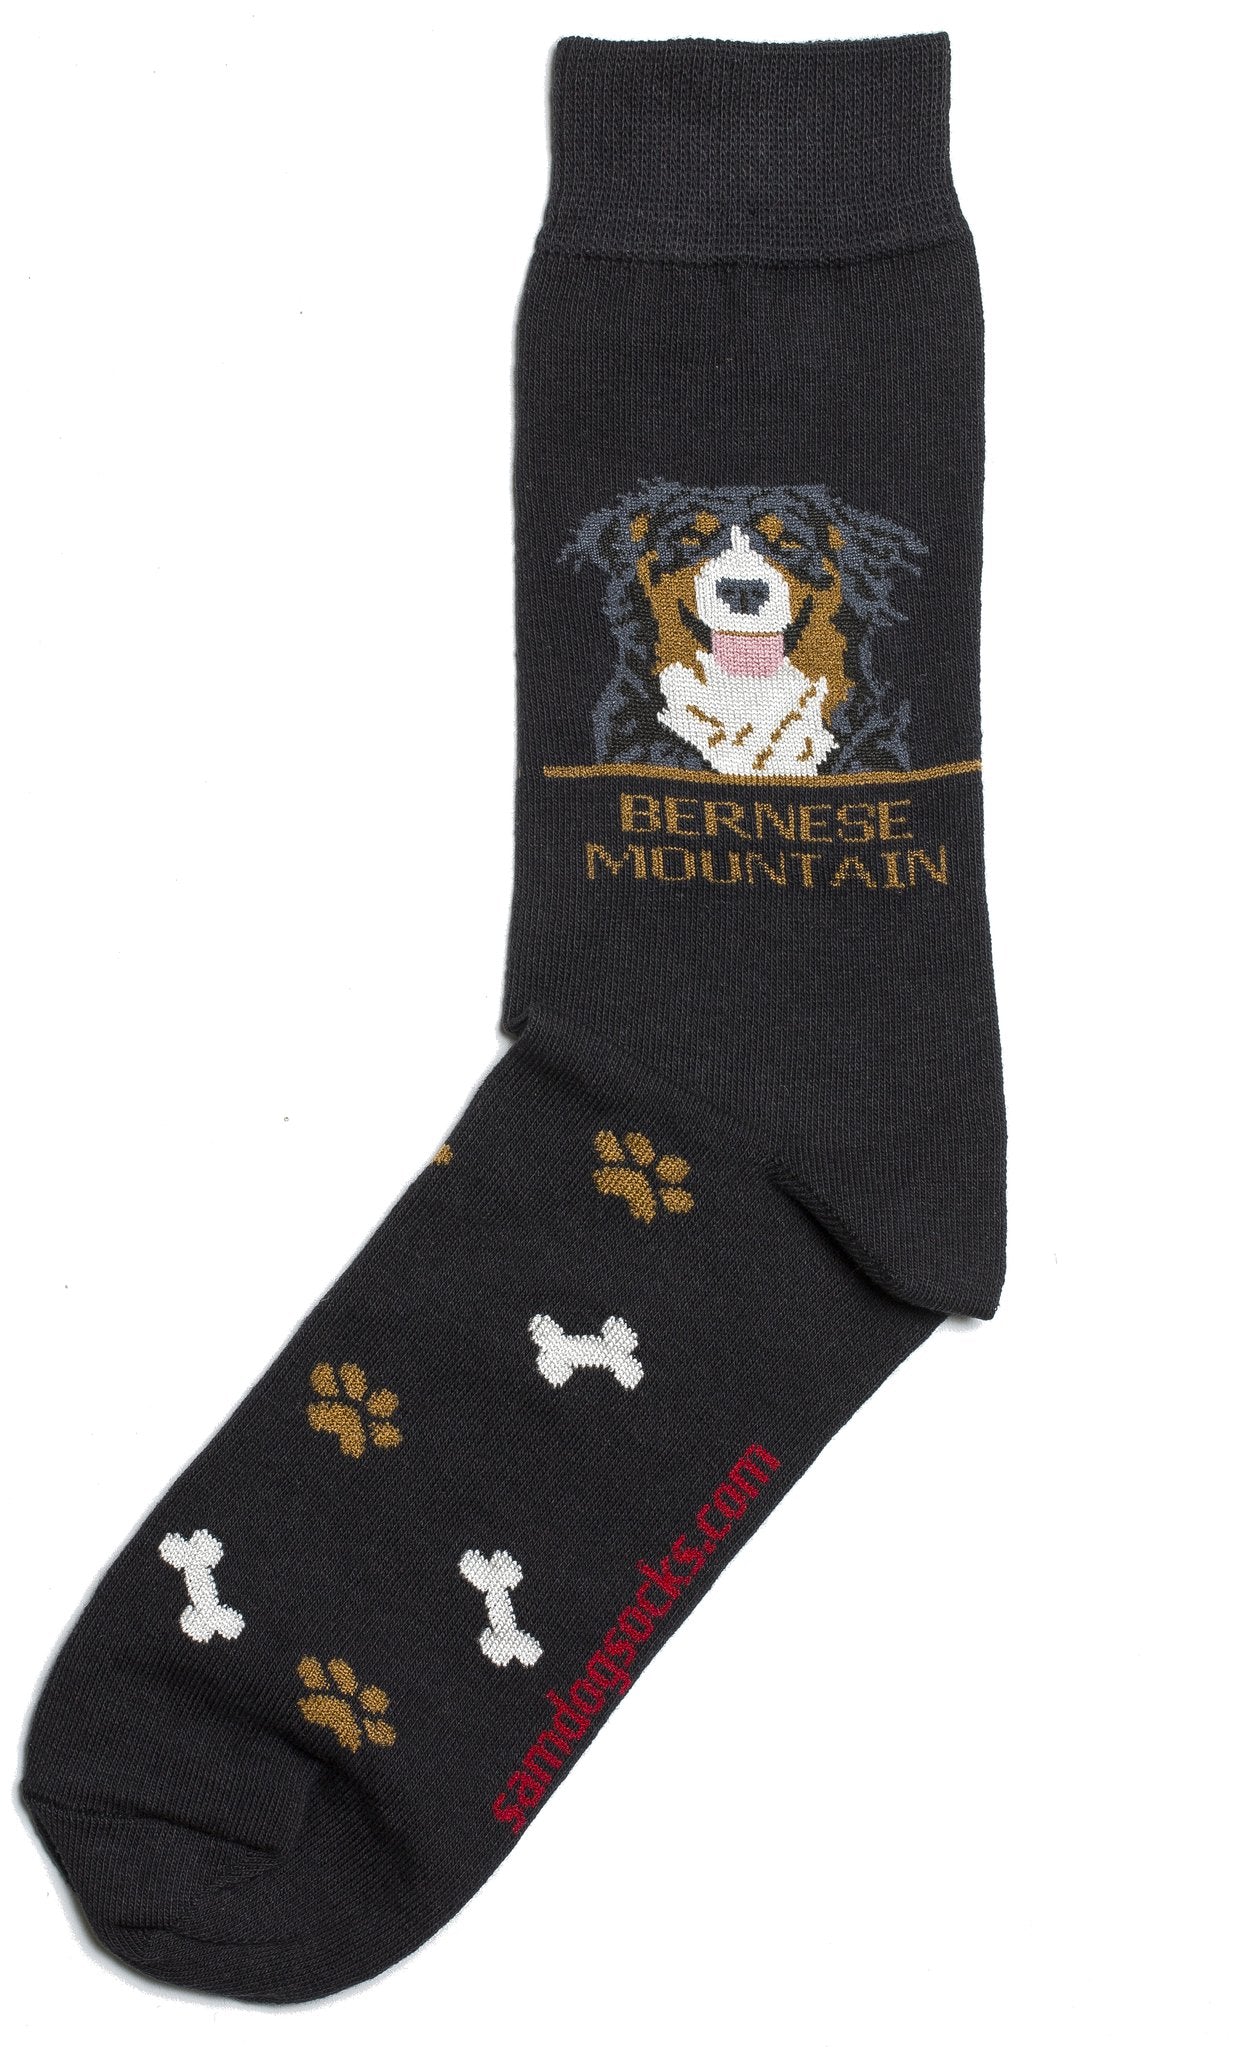 Bernese socks for men - black